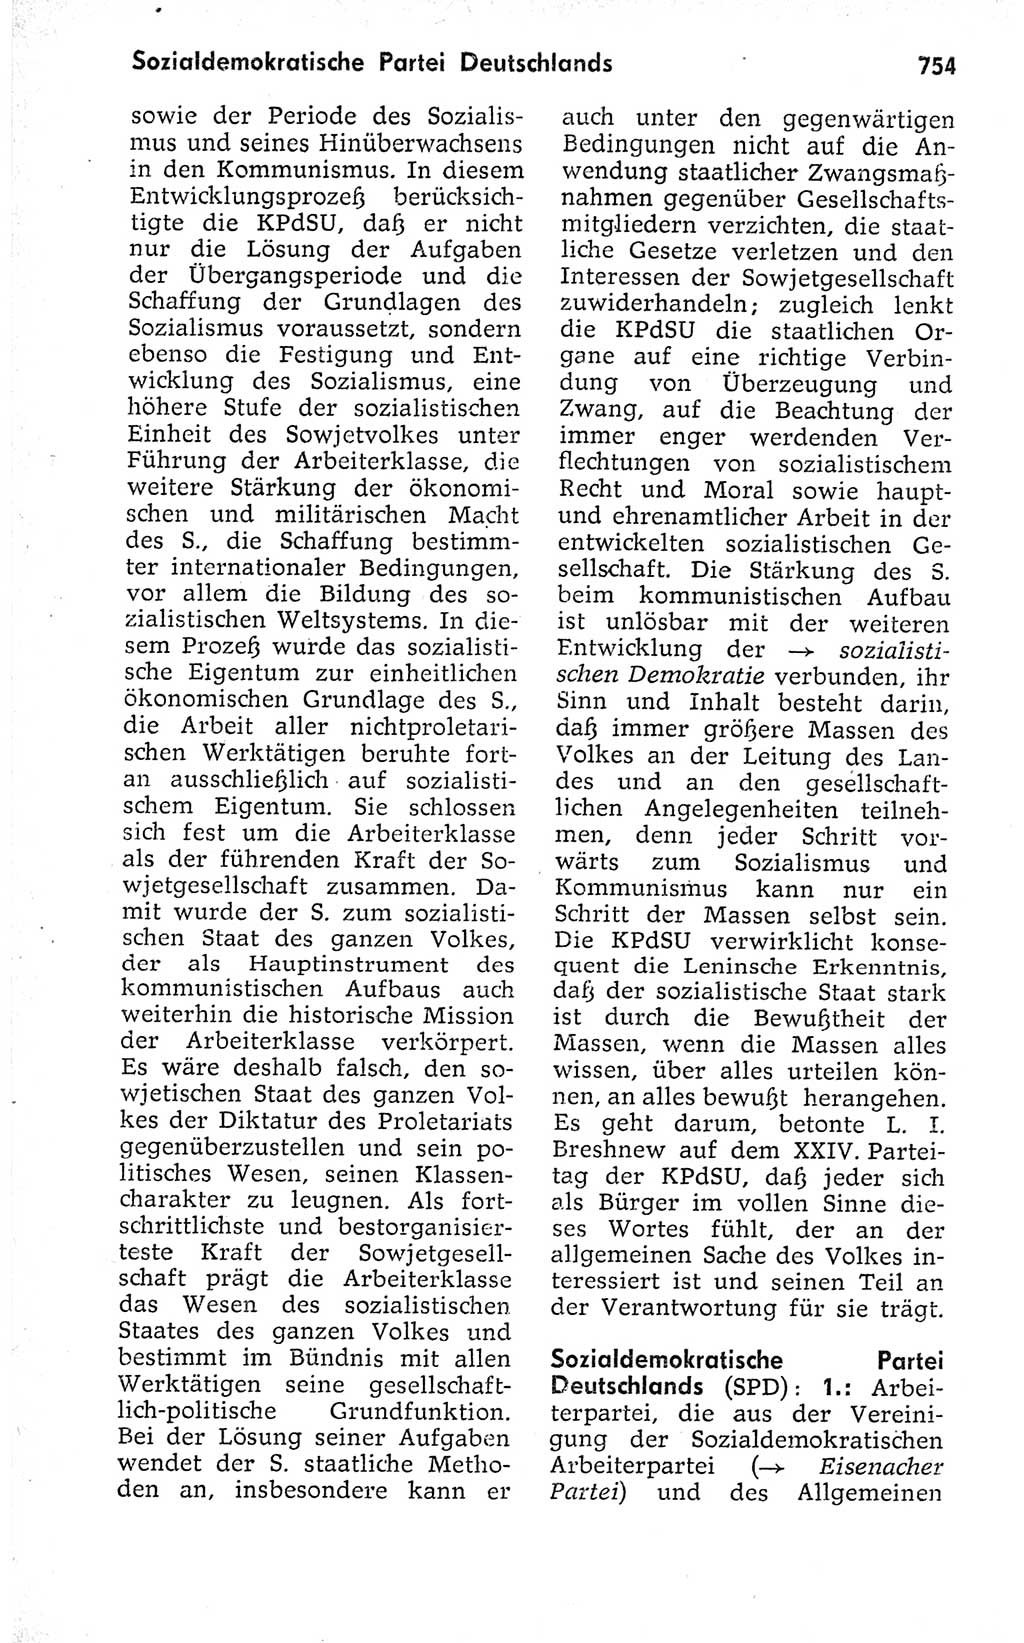 Kleines politisches Wörterbuch [Deutsche Demokratische Republik (DDR)] 1973, Seite 754 (Kl. pol. Wb. DDR 1973, S. 754)